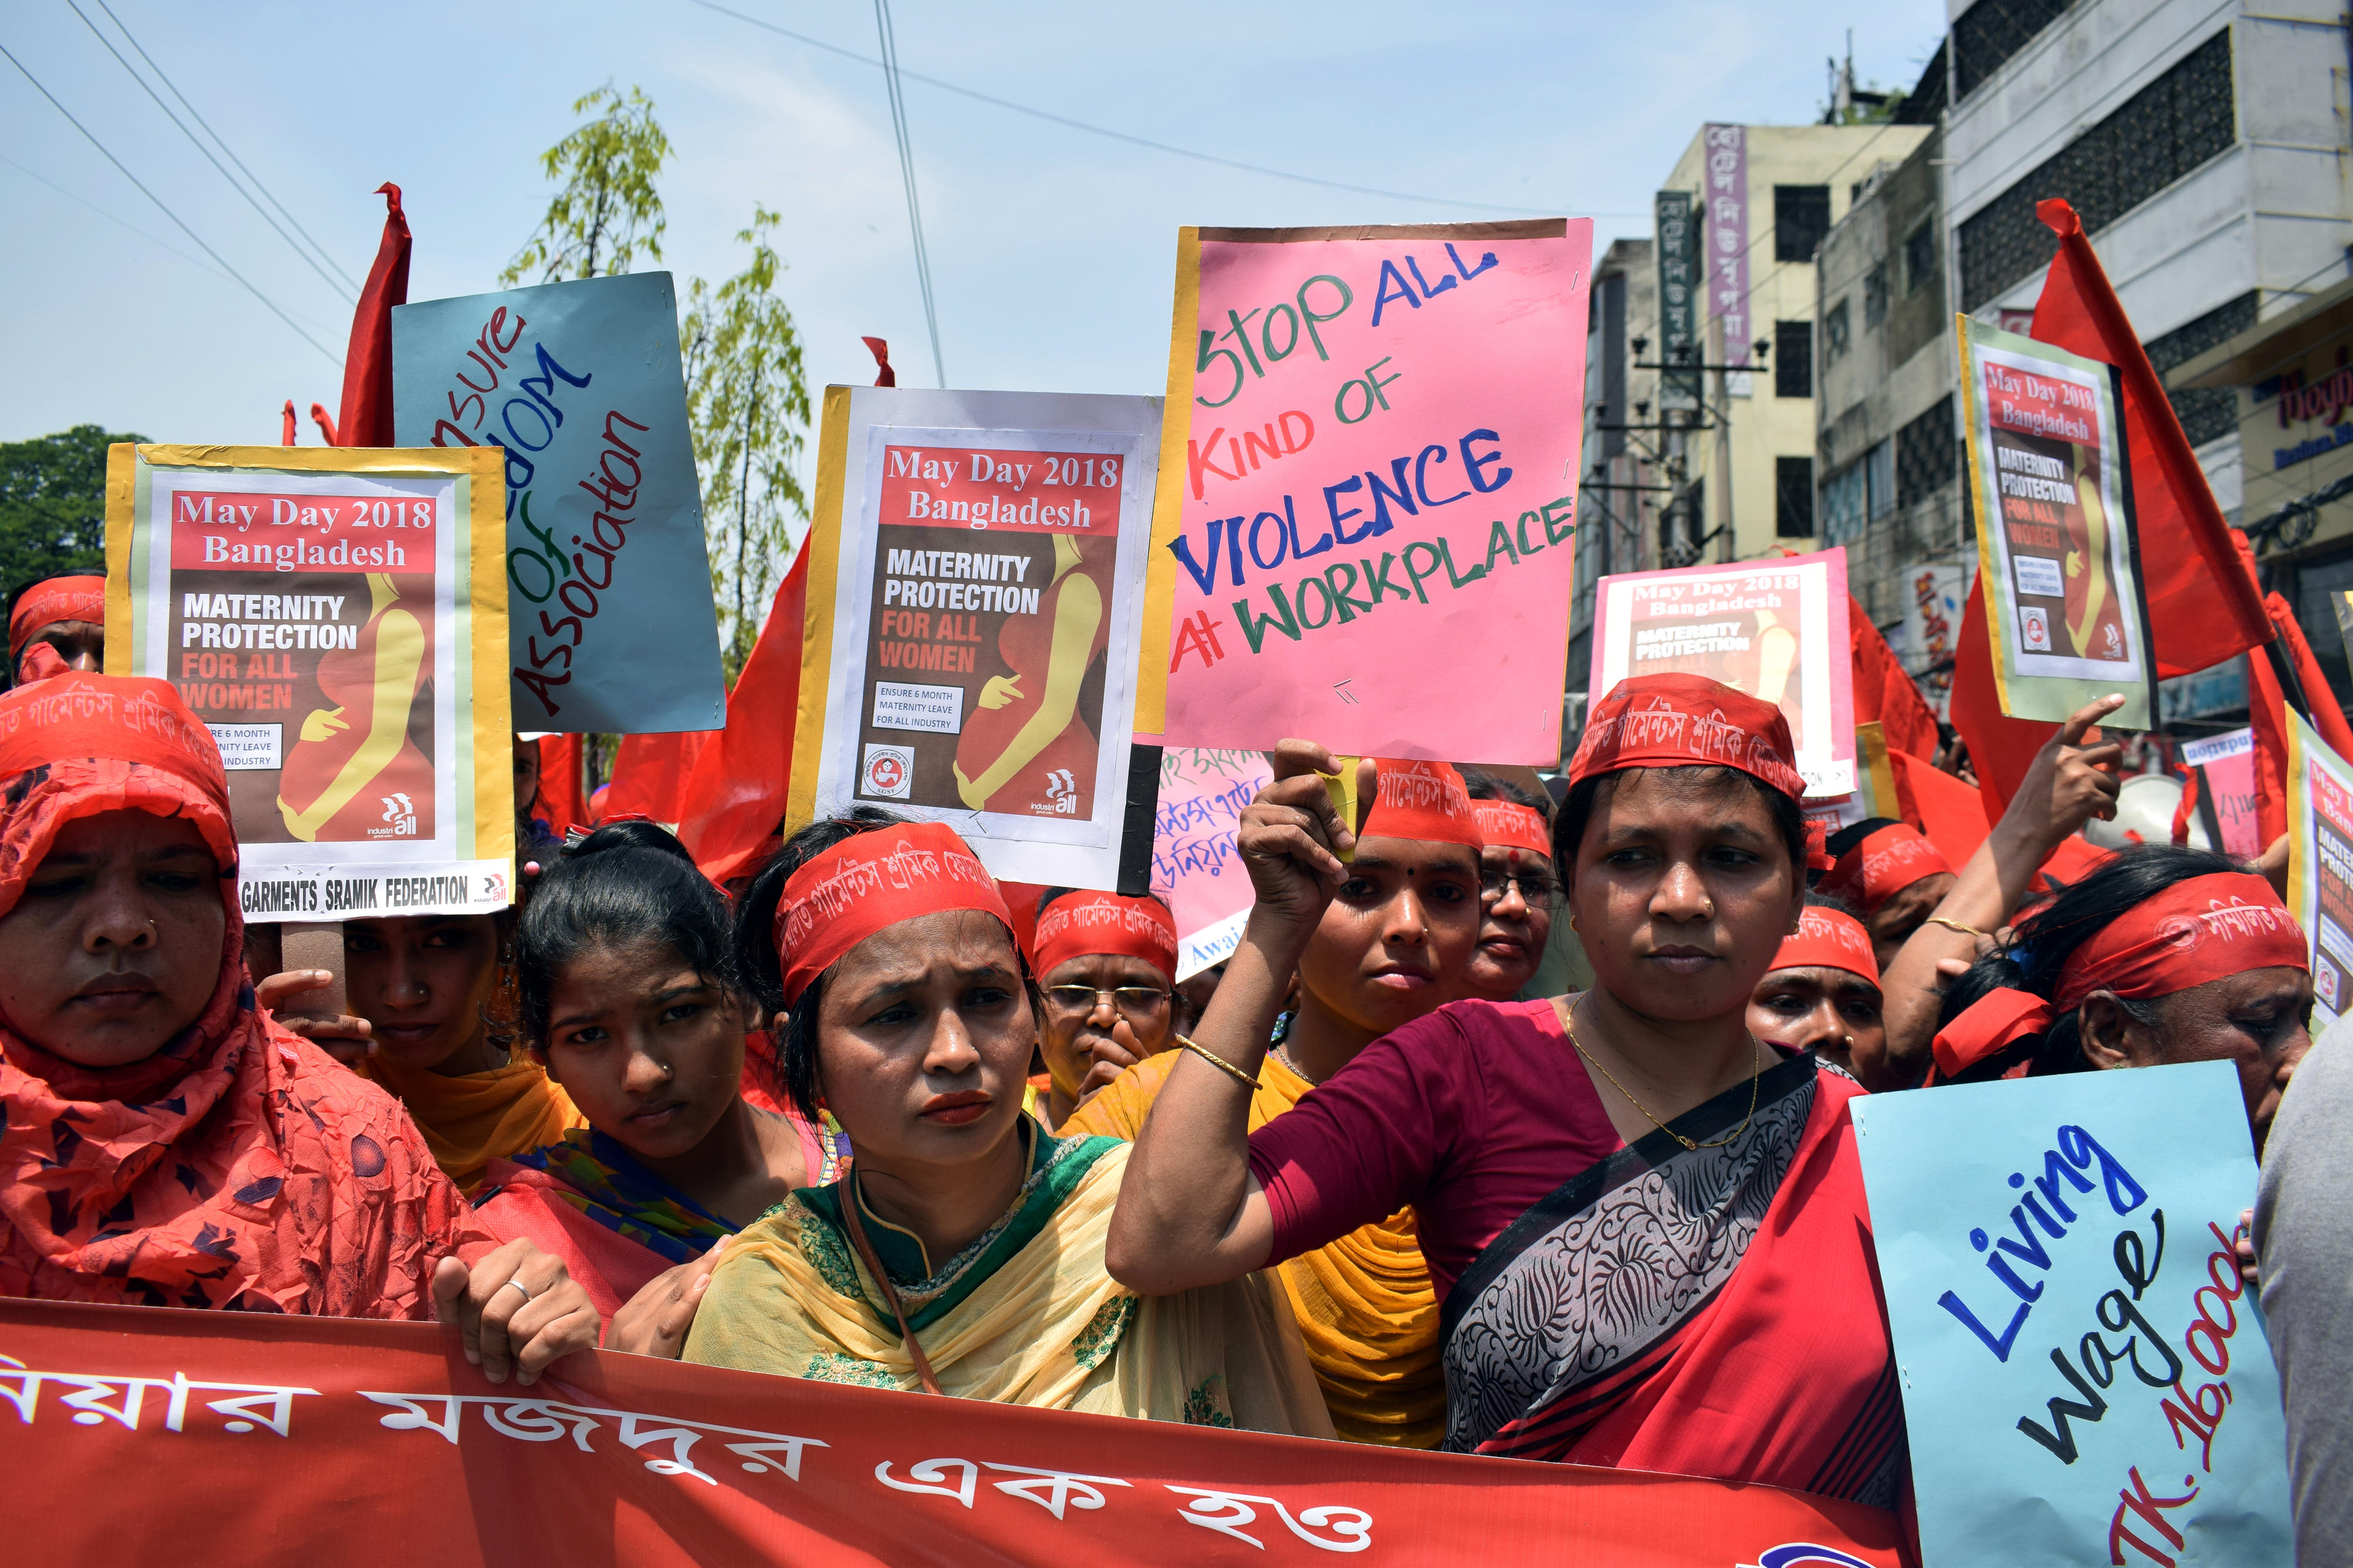 Am 1. Mai 2018 demonstrieren Frauen in Bangladesch für ihre Grundrechte. Sie halten Plakate mit ihren Forderungen – unter anderem: Gesundheitsversorgung für Schwangere, Schutz vor Gewalt am Arbeitsplatz und existenzsichernde Löhne